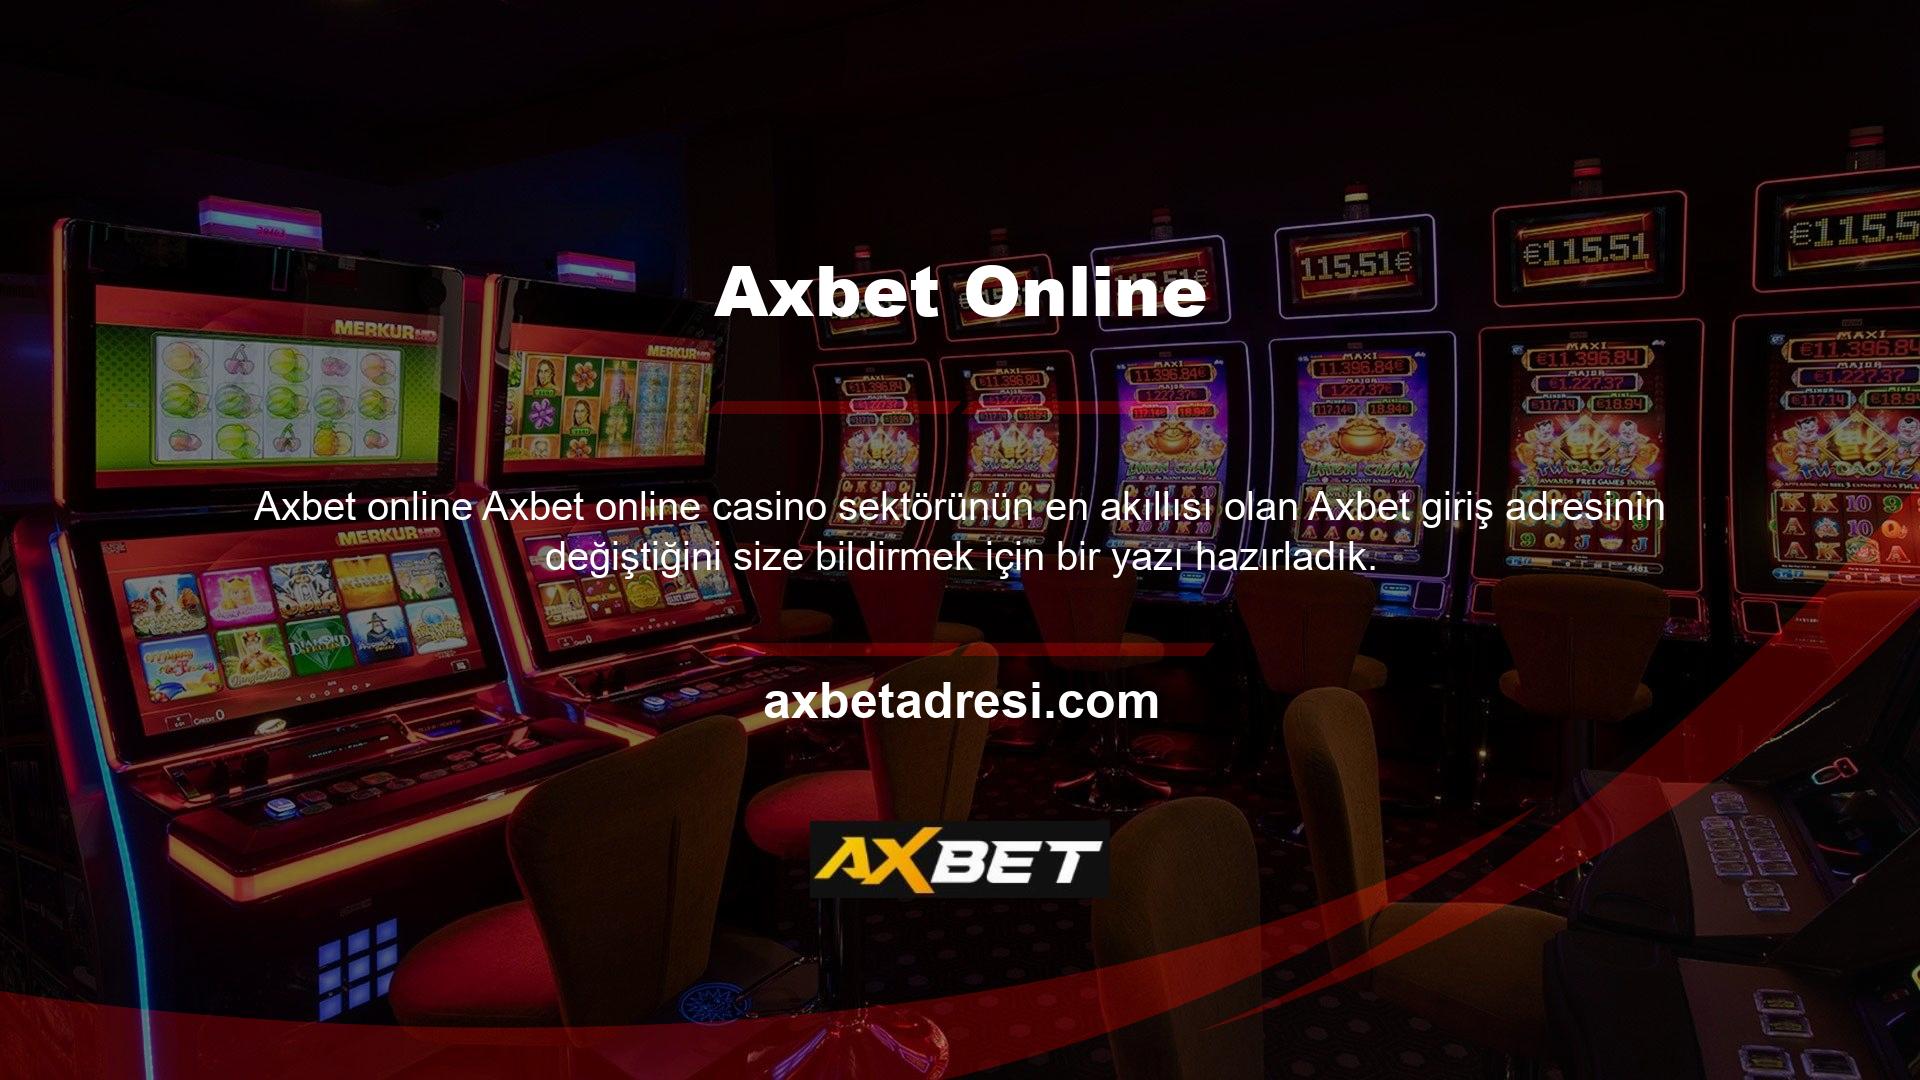 Bu makale, Axbet oturum açma adresinin neden değiştiğini ve casinonunun web sitesindeki ayrıntıları açıklamaktadır